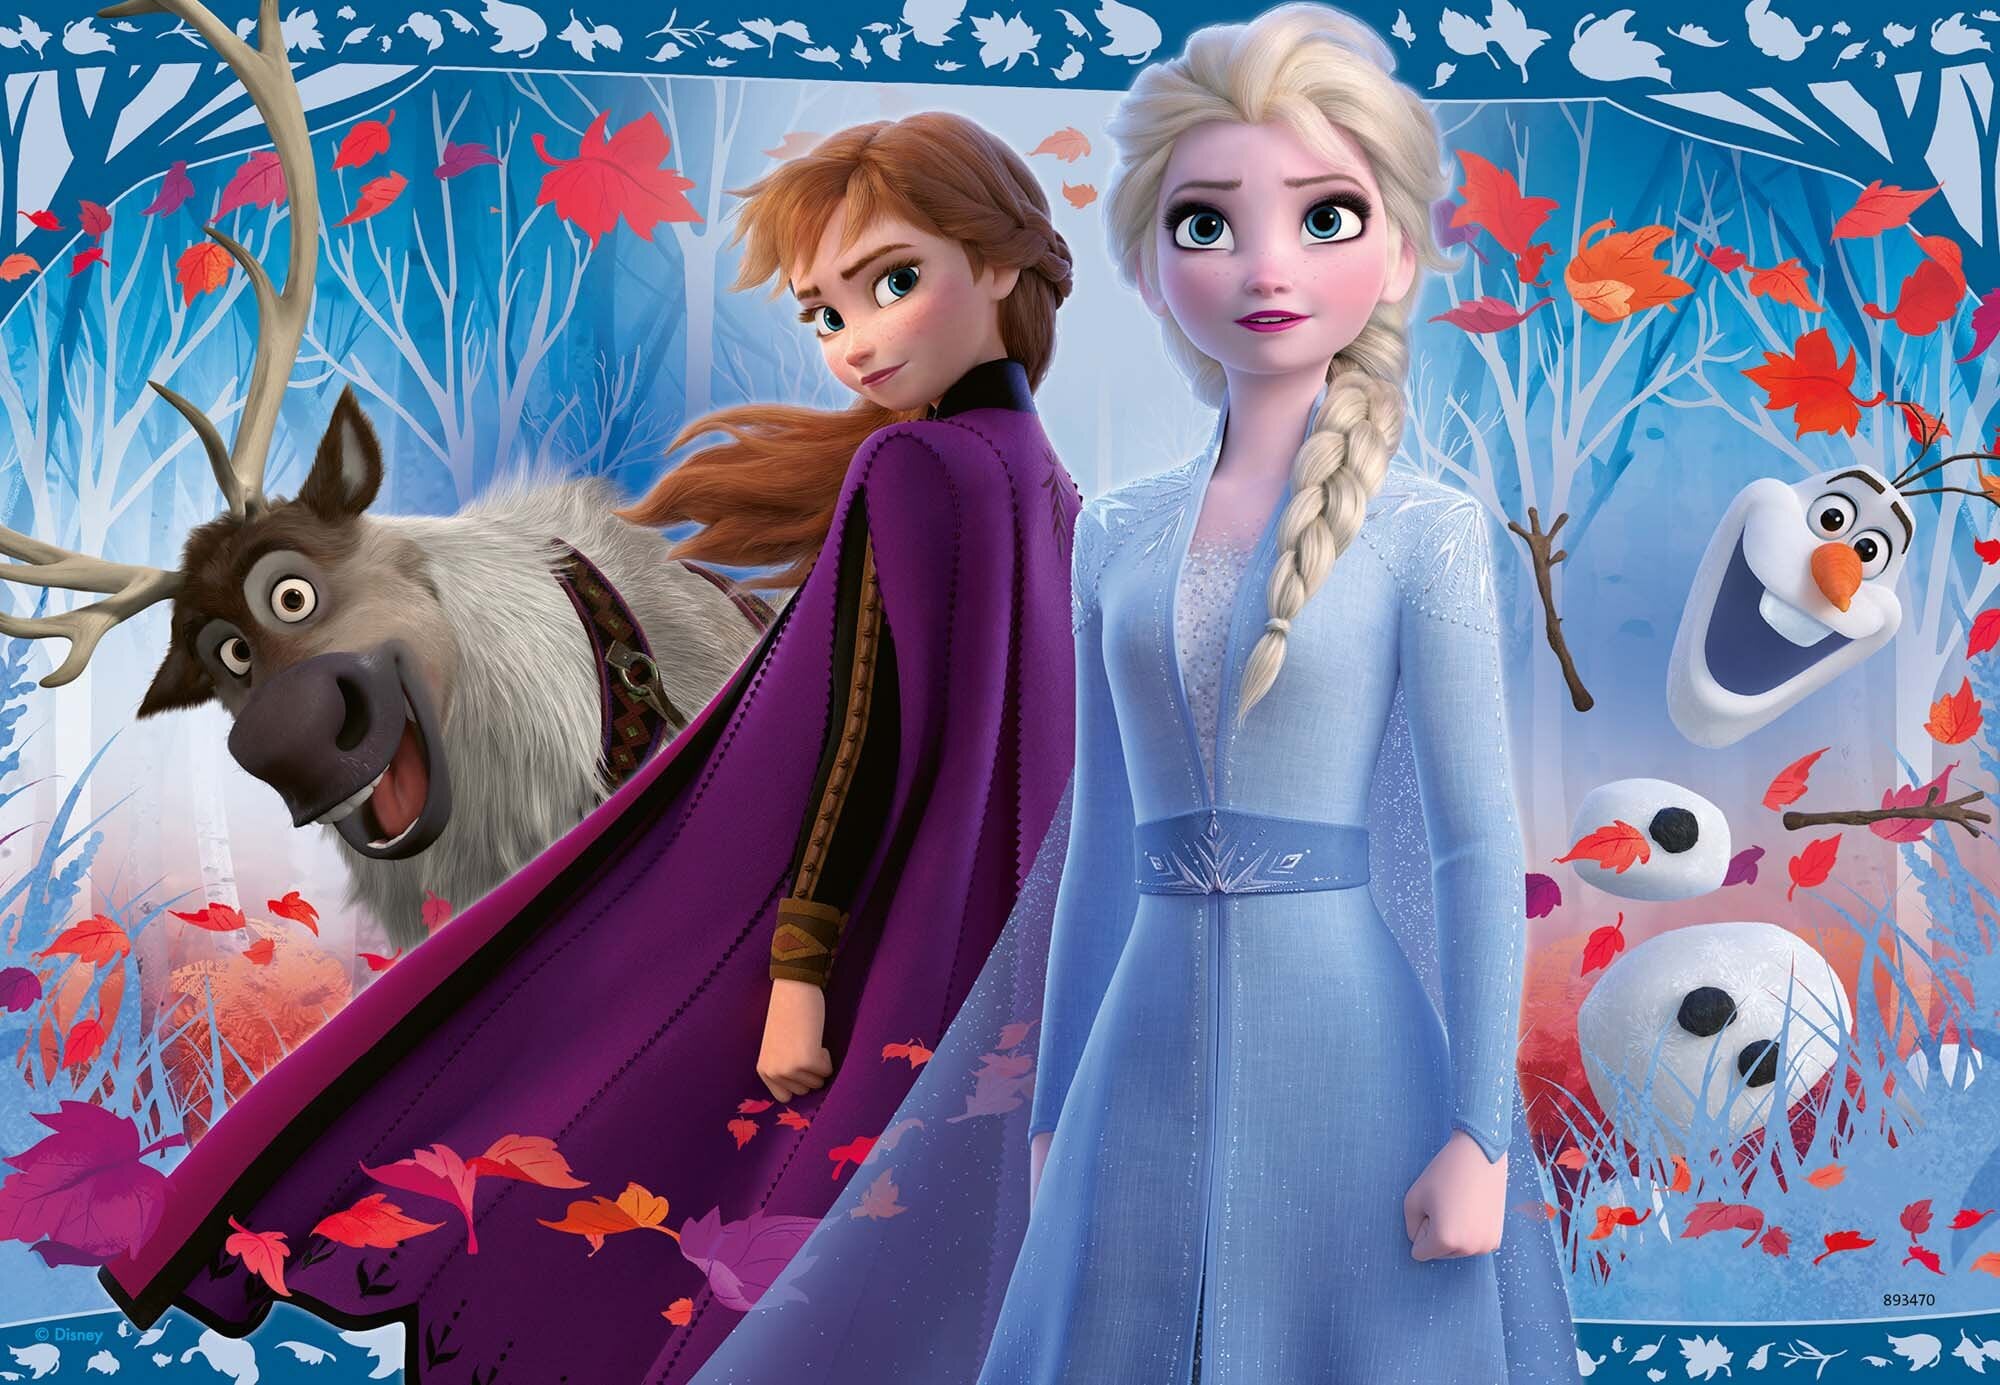 Ravensburger Puzzel - Disney Frozen 2x12 stukjes